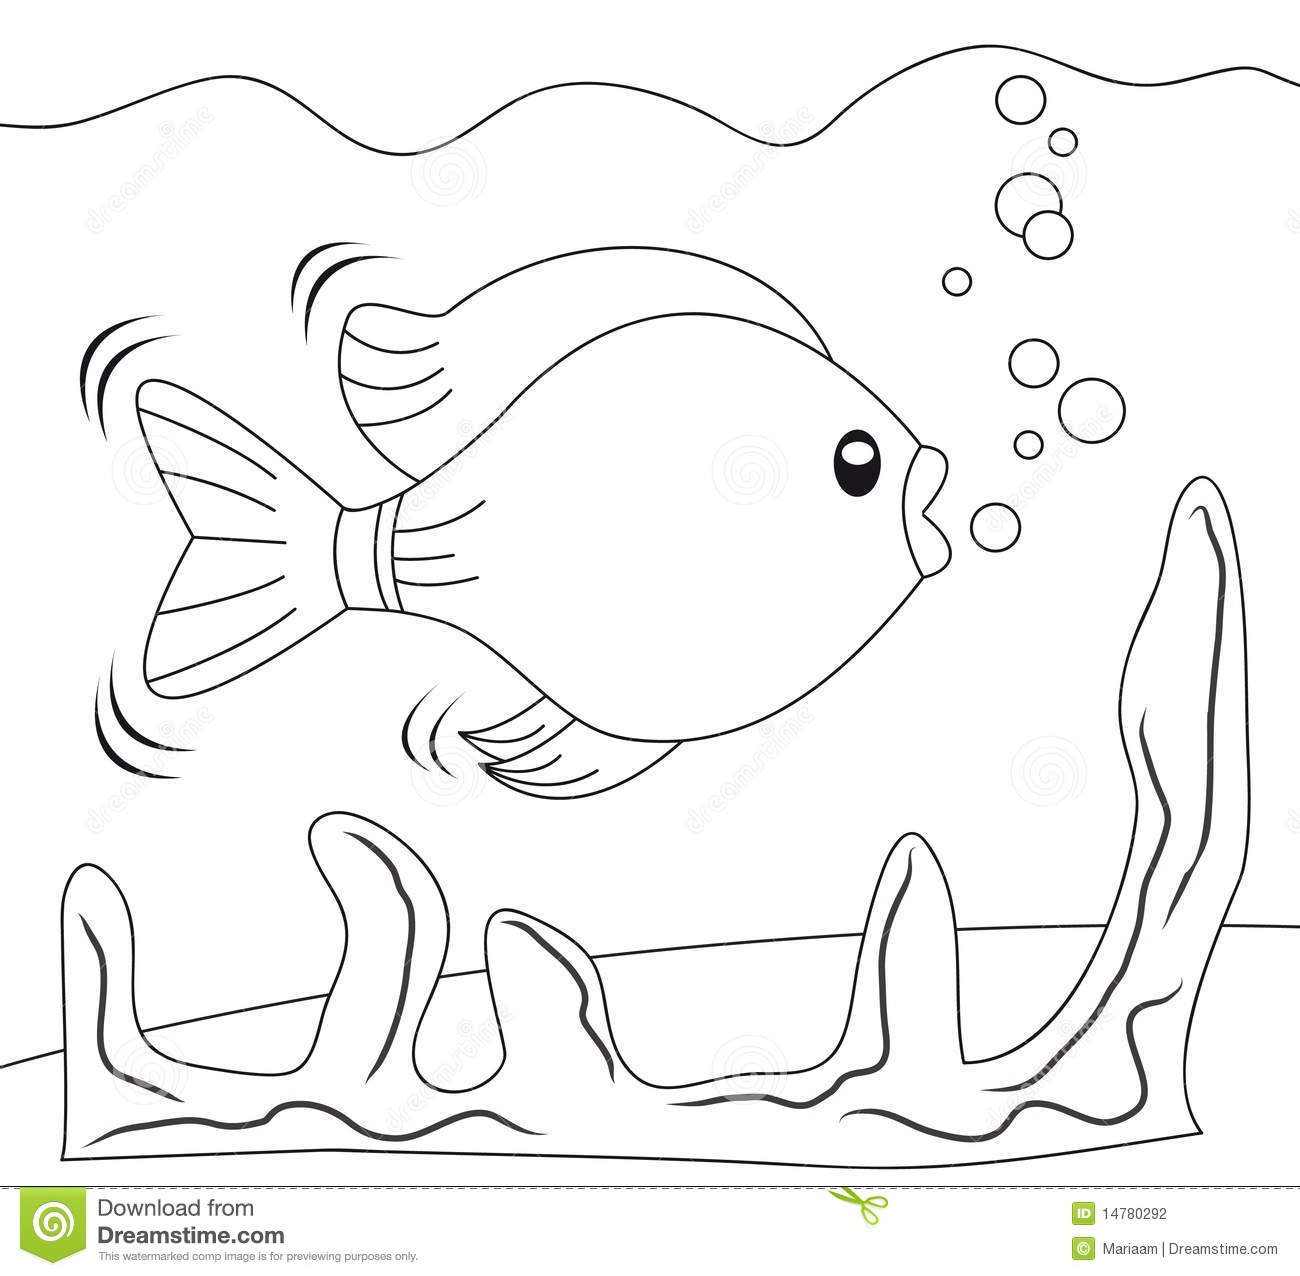 Fish in aquarium stock illustration. Illustration of fish.